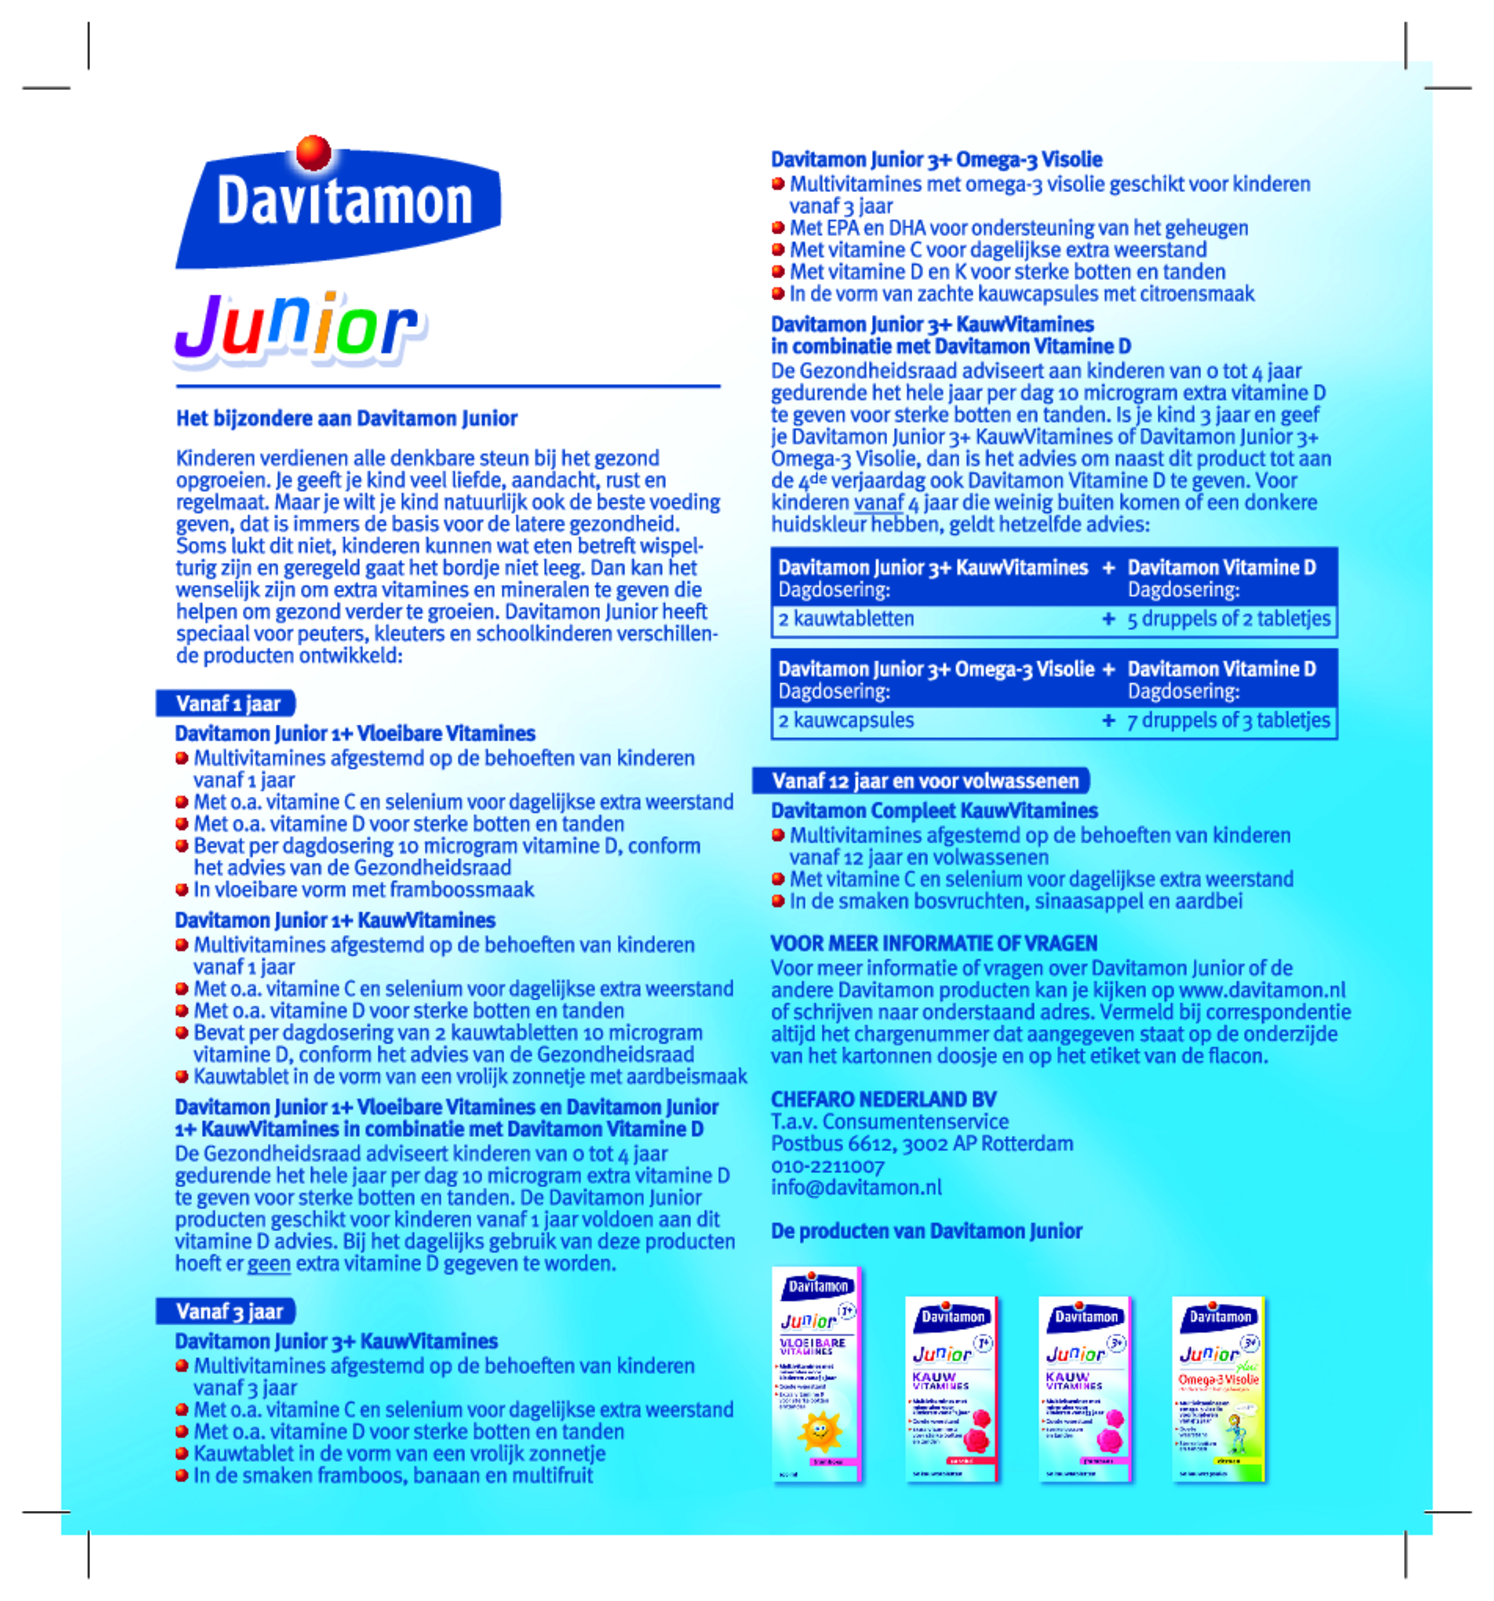 Junior 3+ Kauw Vitamines Multifruit afbeelding van document #1, gebruiksaanwijzing